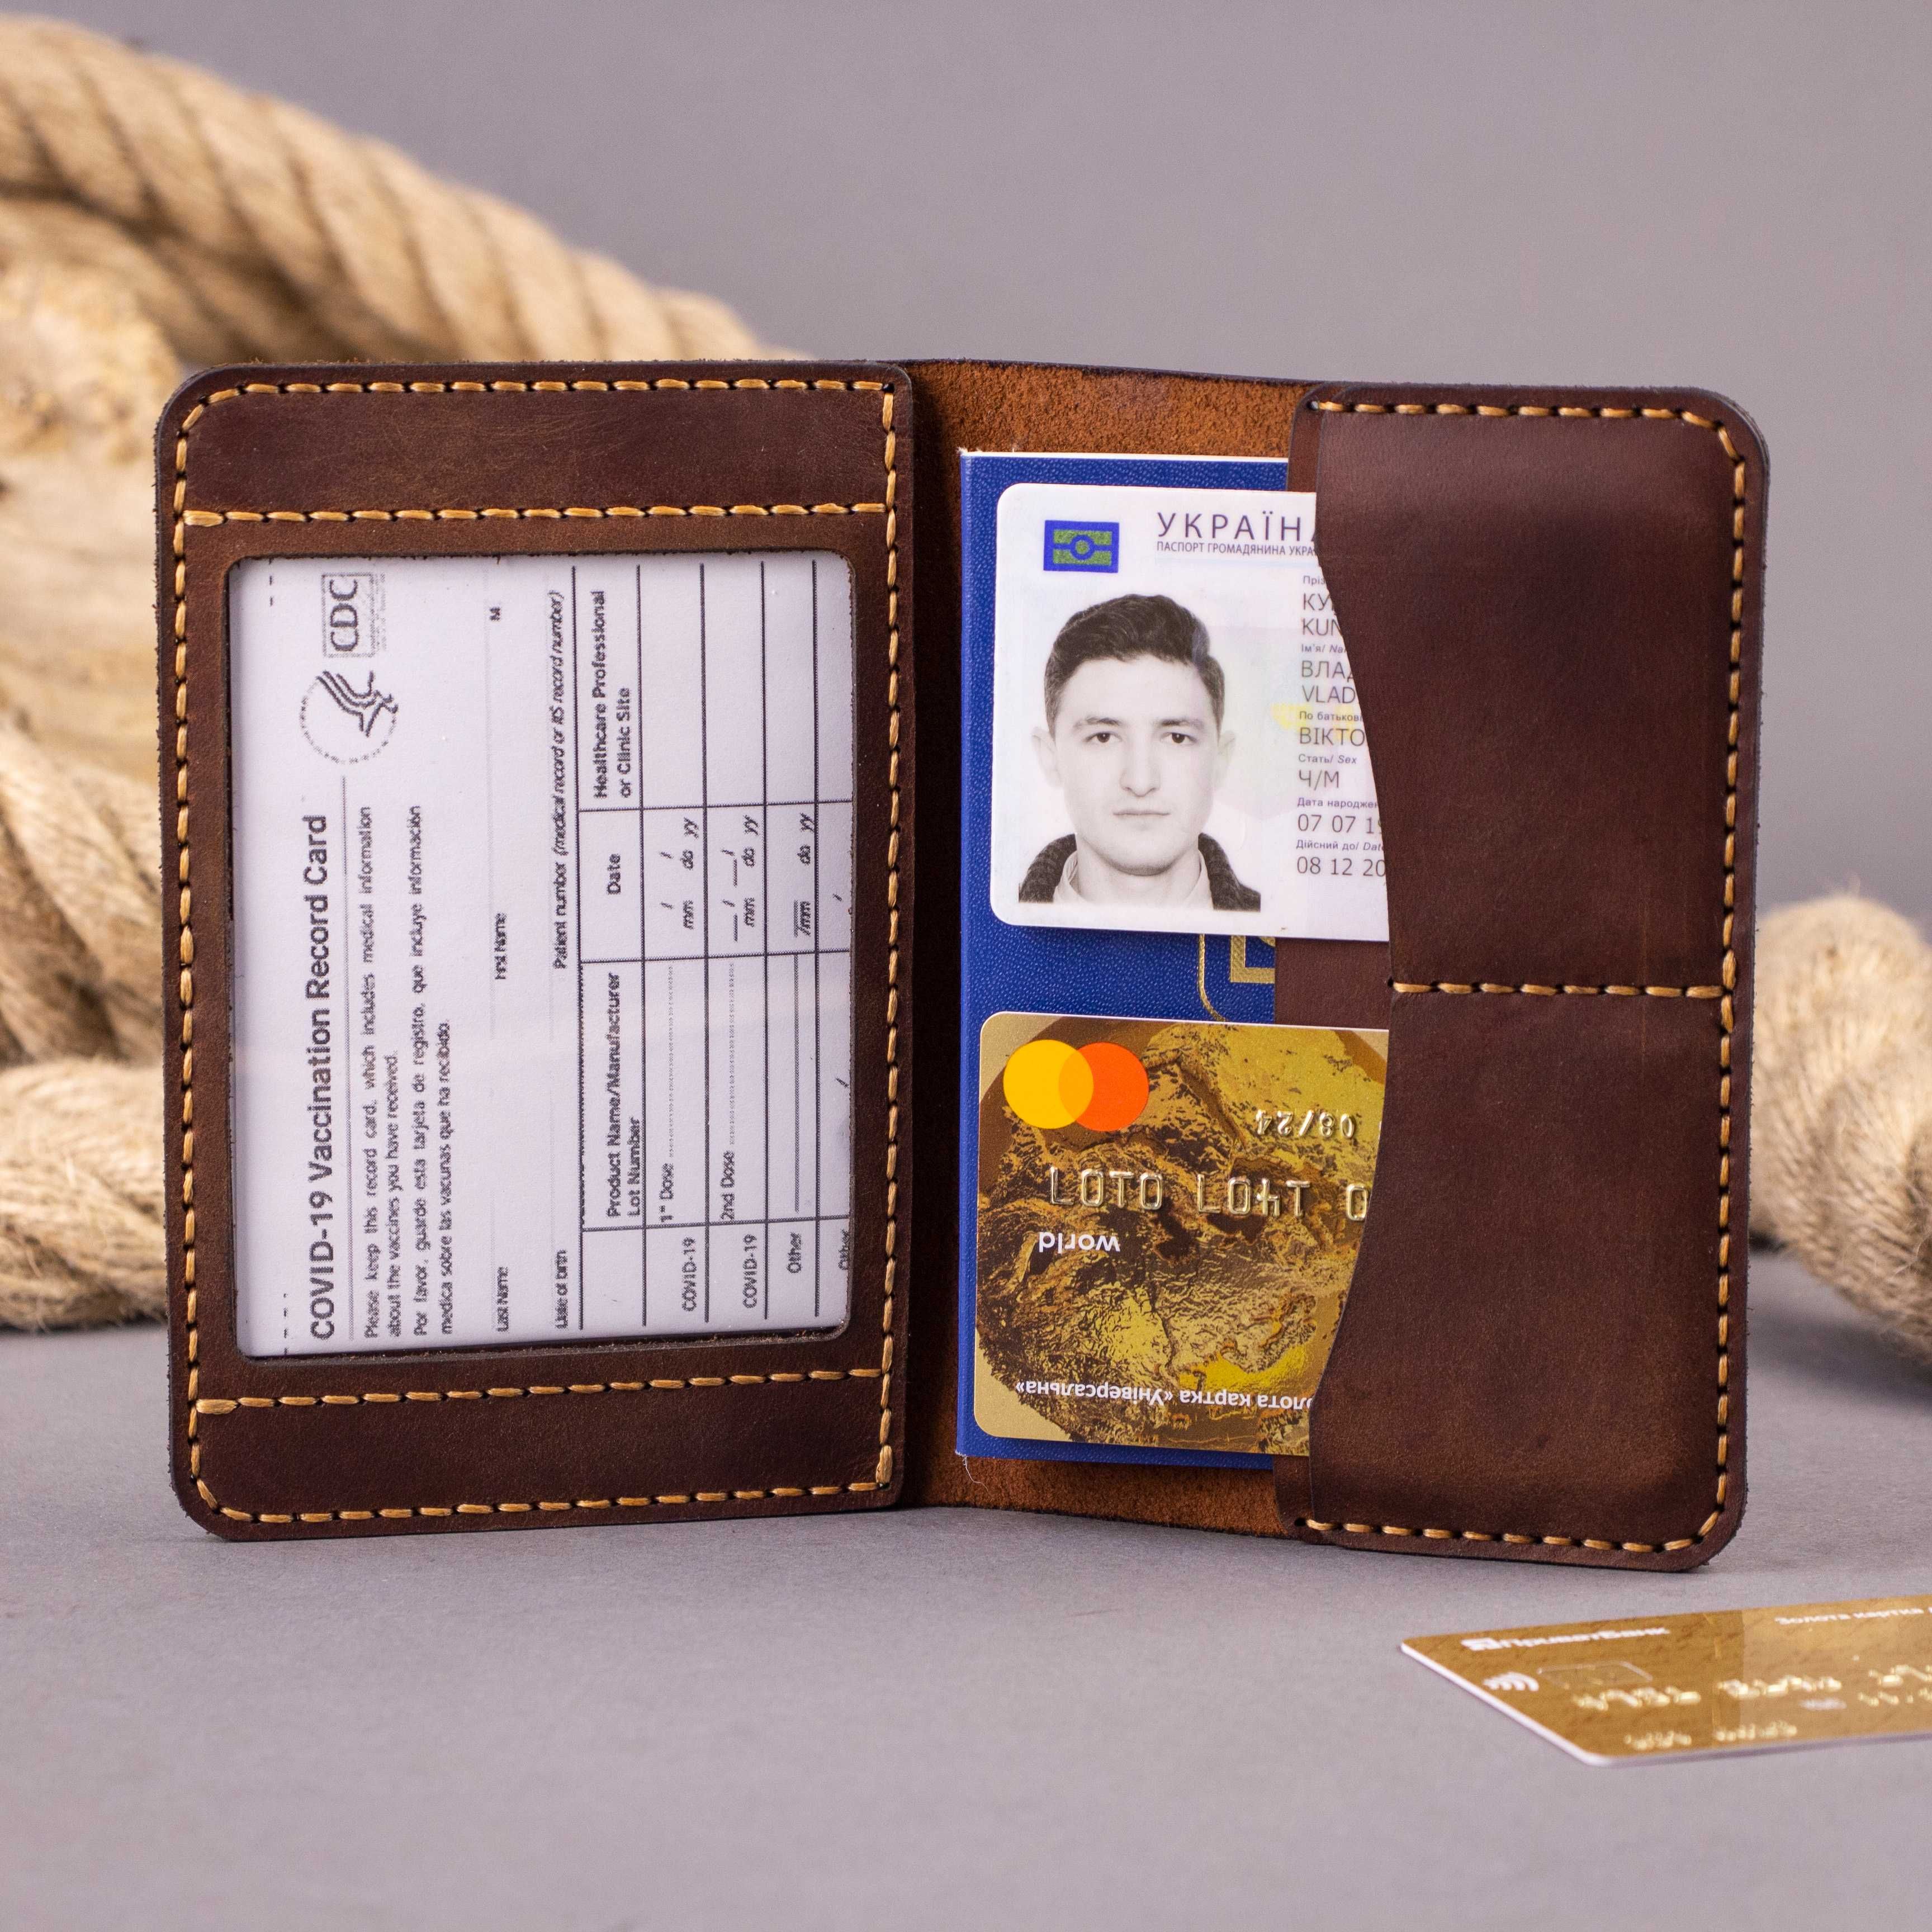 Кожаная обложка для паспорта, пропуска, документов, ID карты, прав